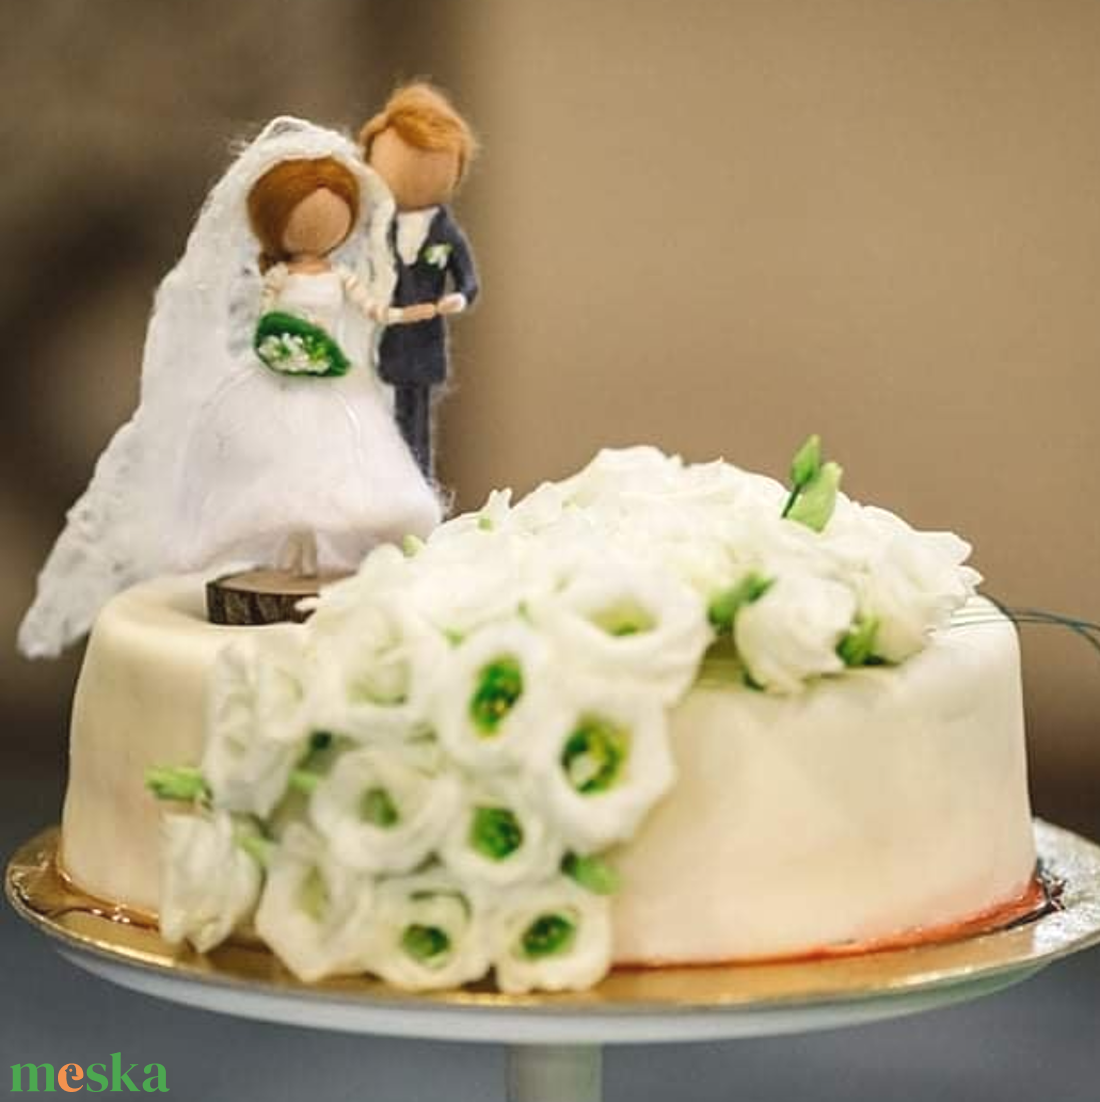 Egyedi esküvői torta dísz - gyapjúból készült dísz, személyre szabottan, fa talppal - esküvő - dekoráció - sütidísz - Meska.hu